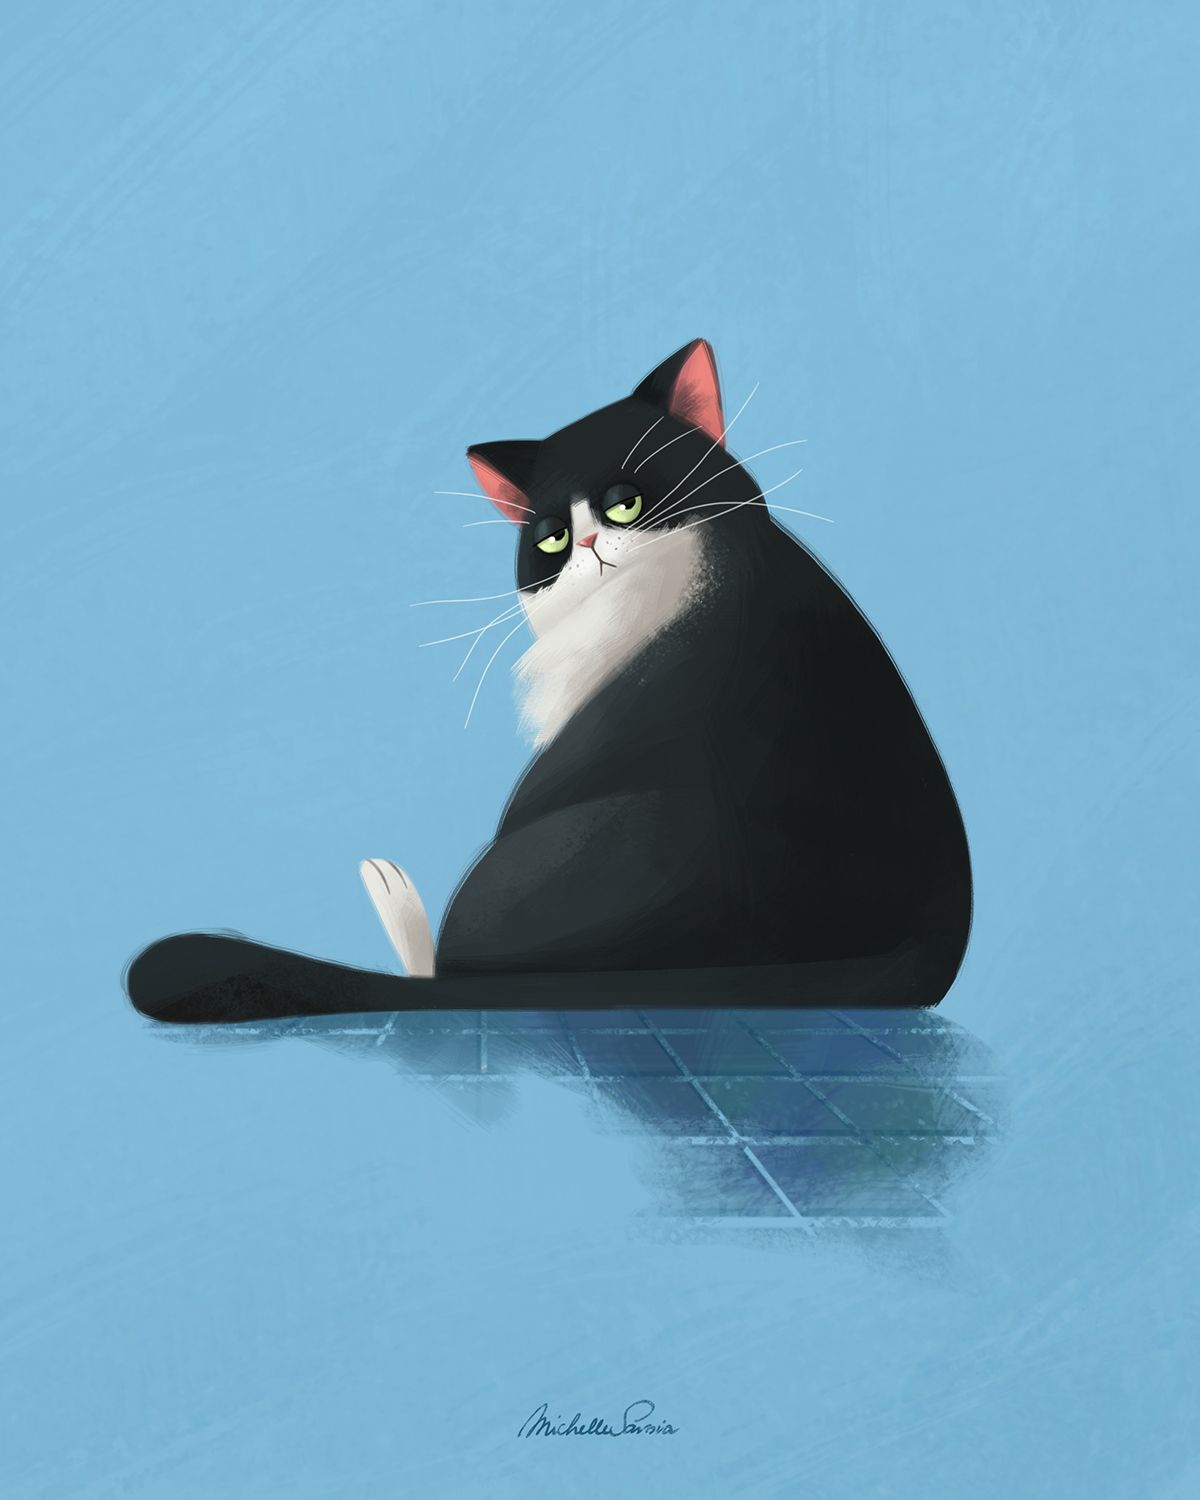 Spicchio the cat. Tuxedo cat art, Cat art illustration, Cat illustration